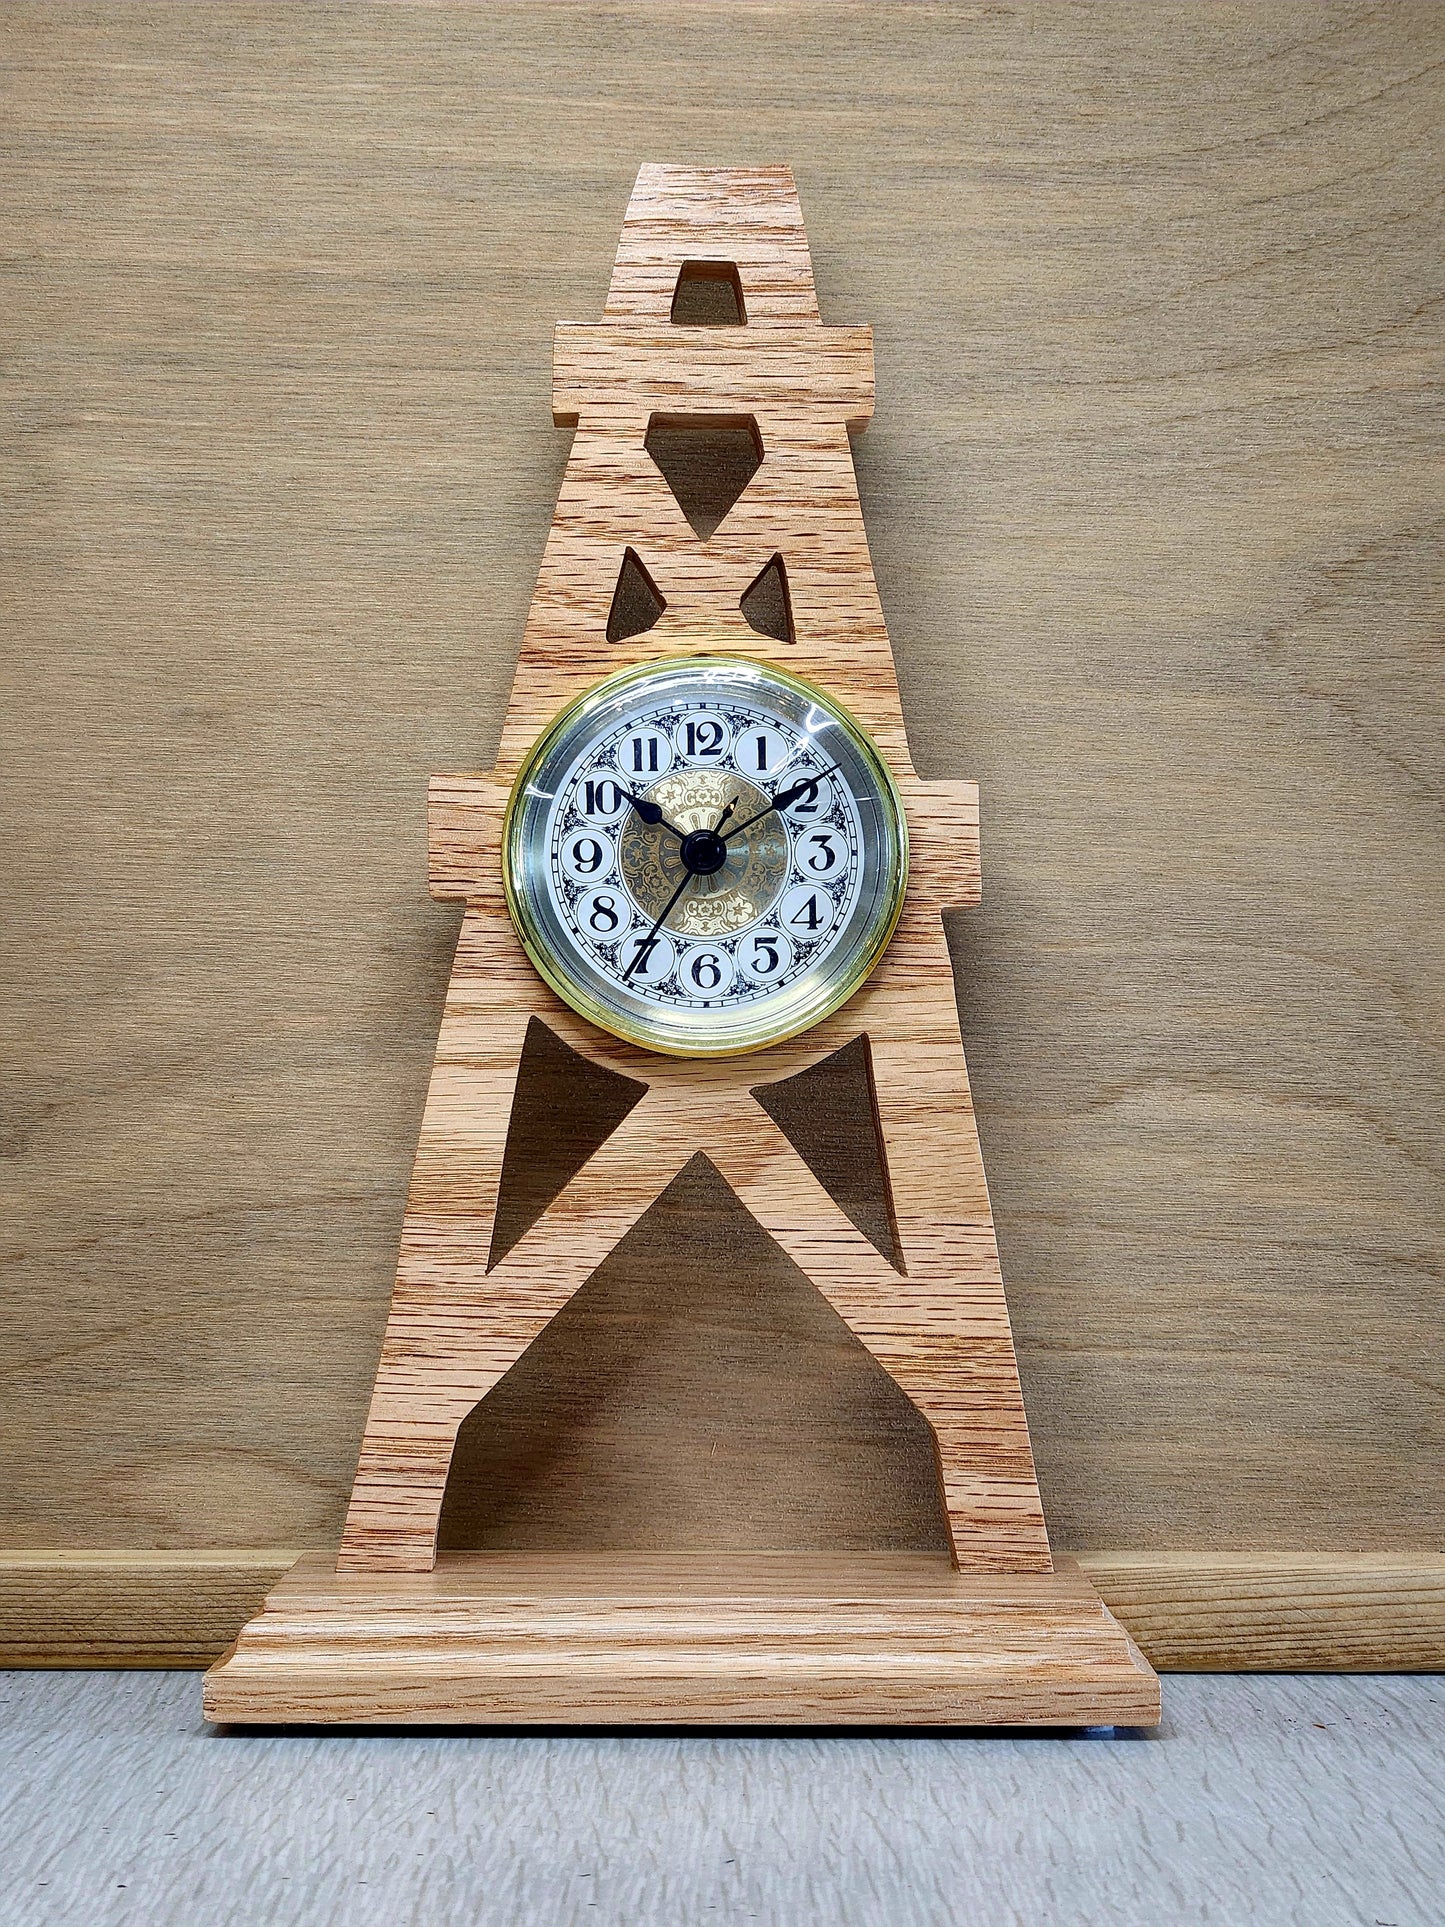 Wooden Clocks - Variety